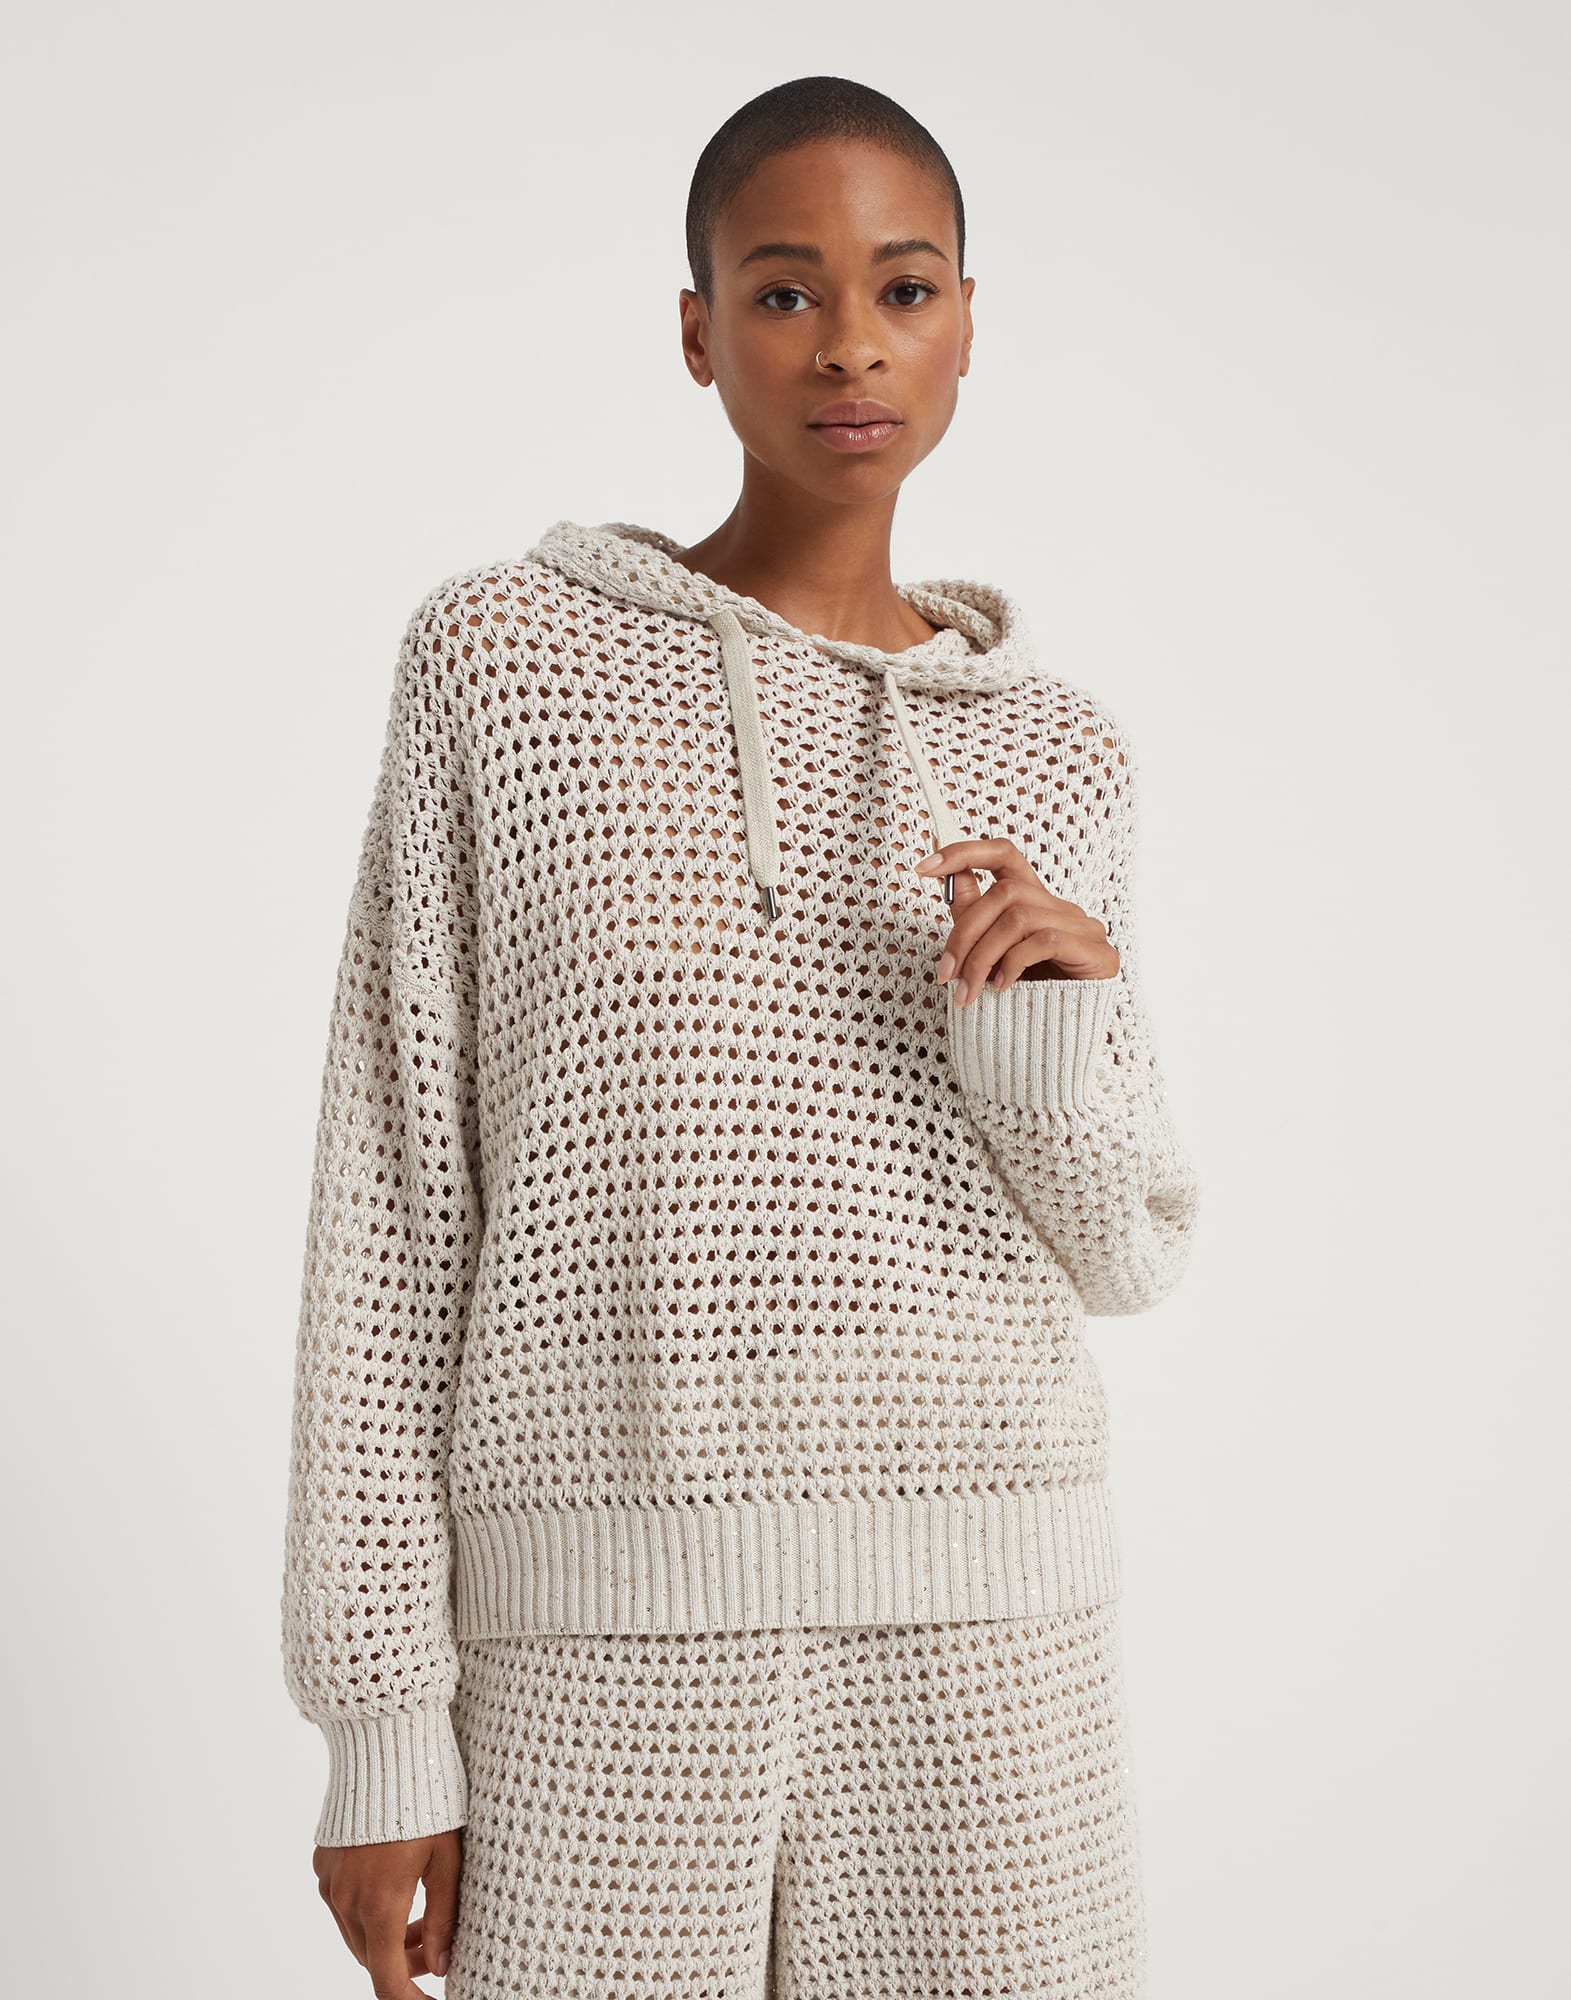 Dazzling Net sweater Oat Woman - Brunello Cucinelli